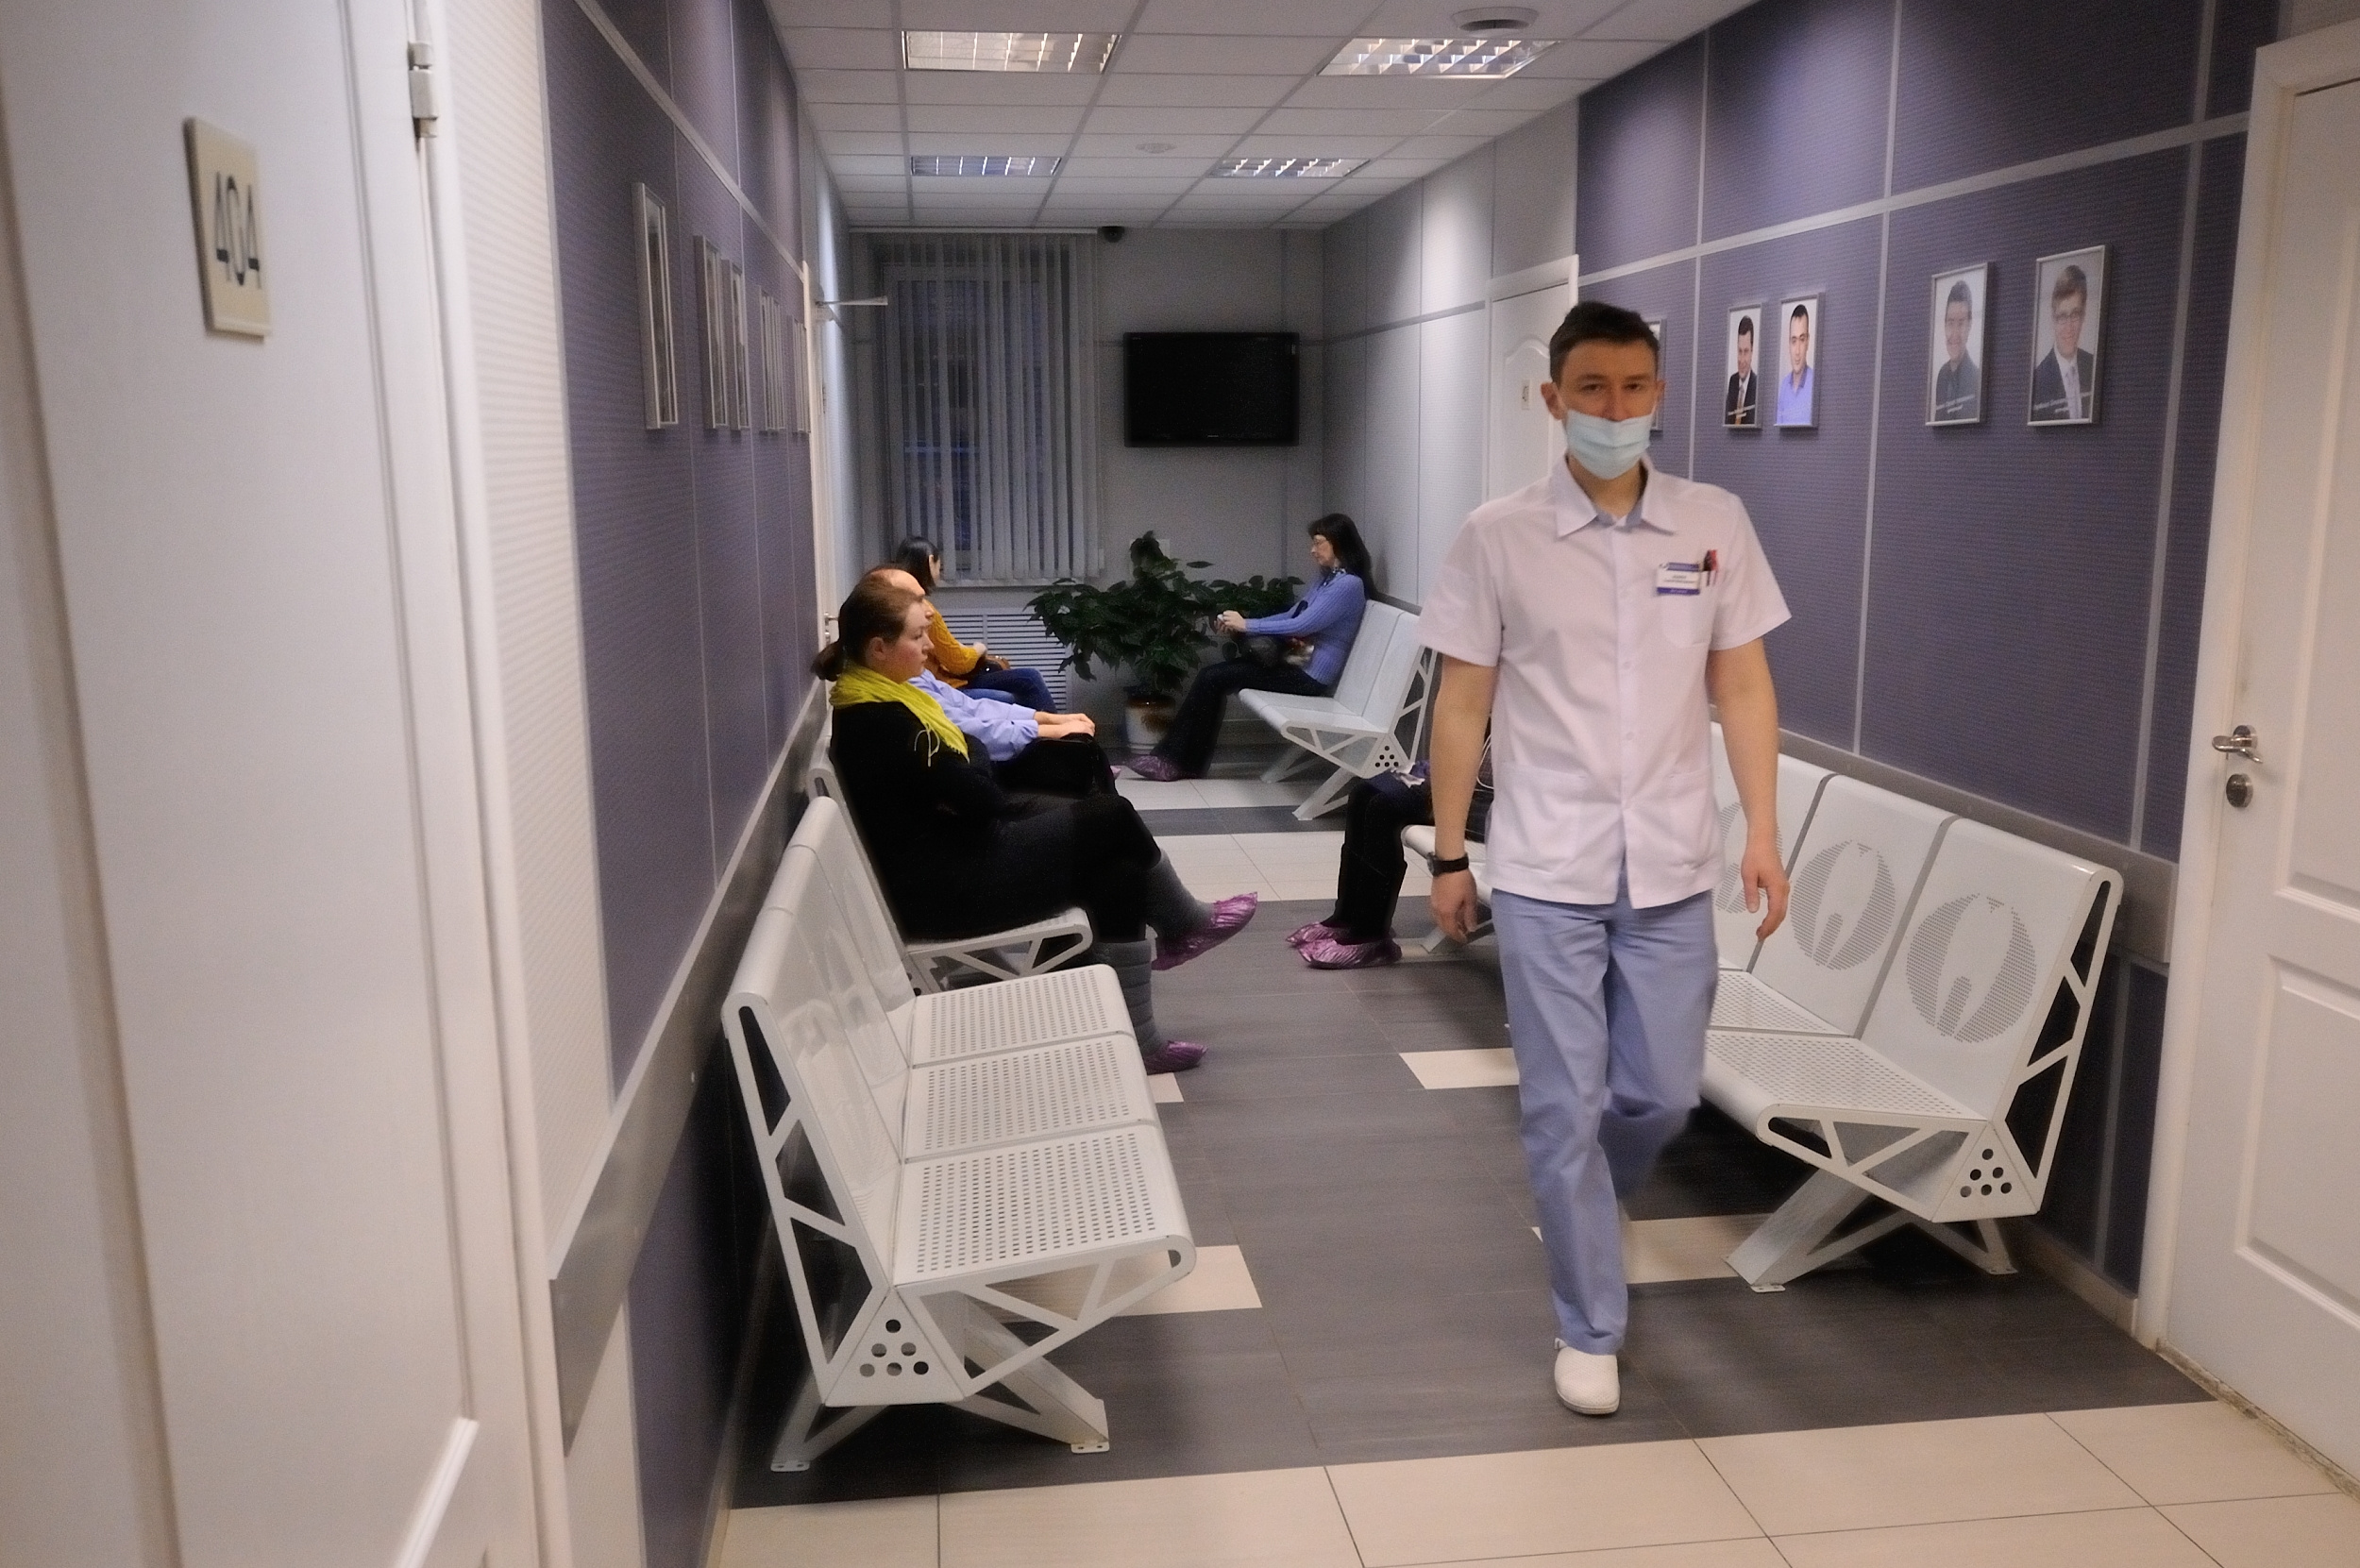 Марина Харитонова рассказала, что областная стоматологическая поликлиника не будет повышать цены до конца лета